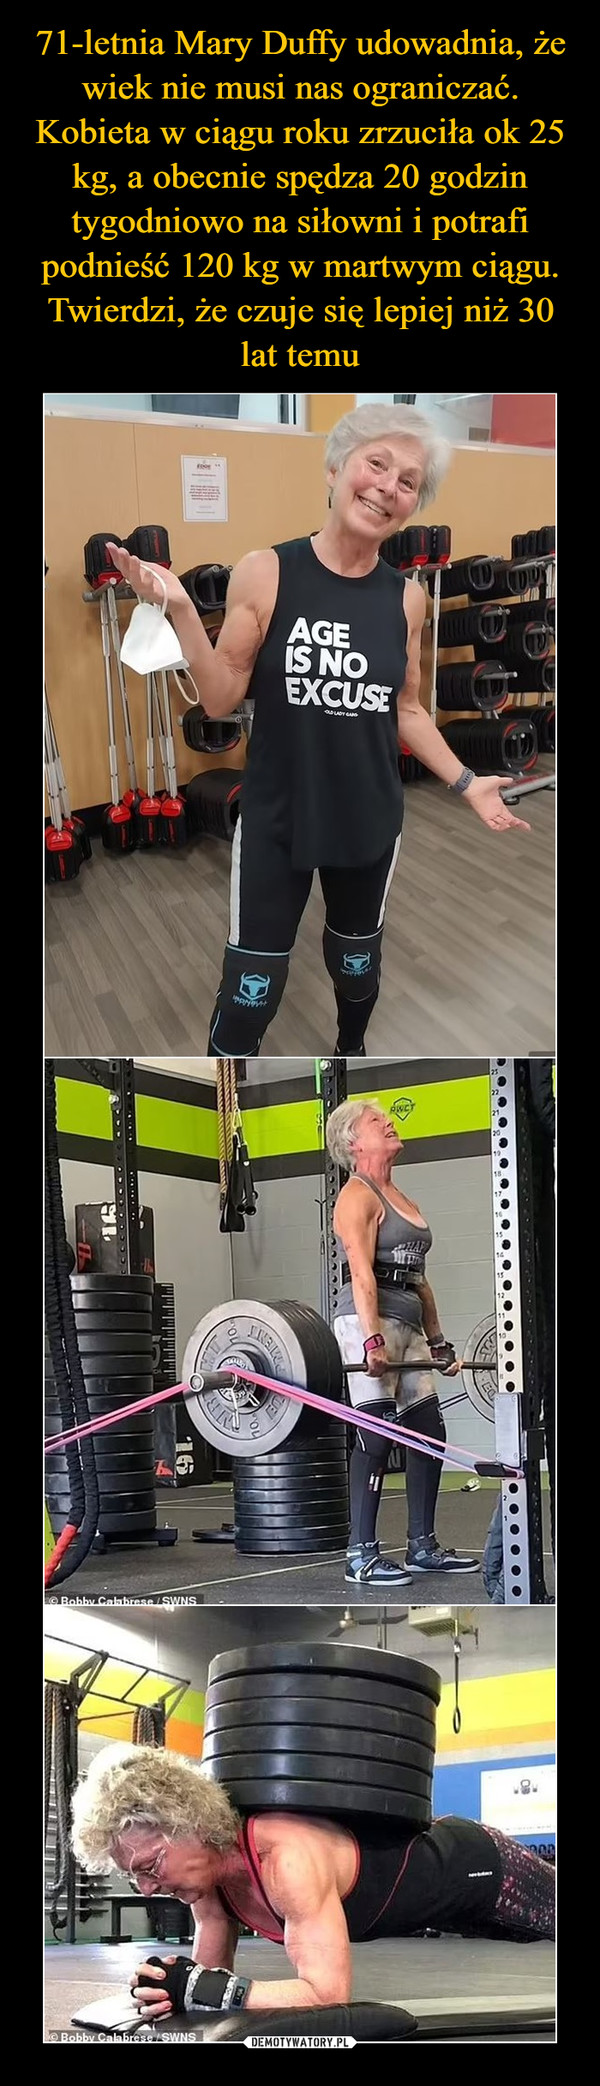 71-letnia Mary Duffy udowadnia, że wiek nie musi nas ograniczać. Kobieta w ciągu roku zrzuciła ok 25 kg, a obecnie spędza 20 godzin tygodniowo na siłowni i potrafi podnieść 120 kg w martwym ciągu. Twierdzi, że czuje się lepiej niż 30 lat temu